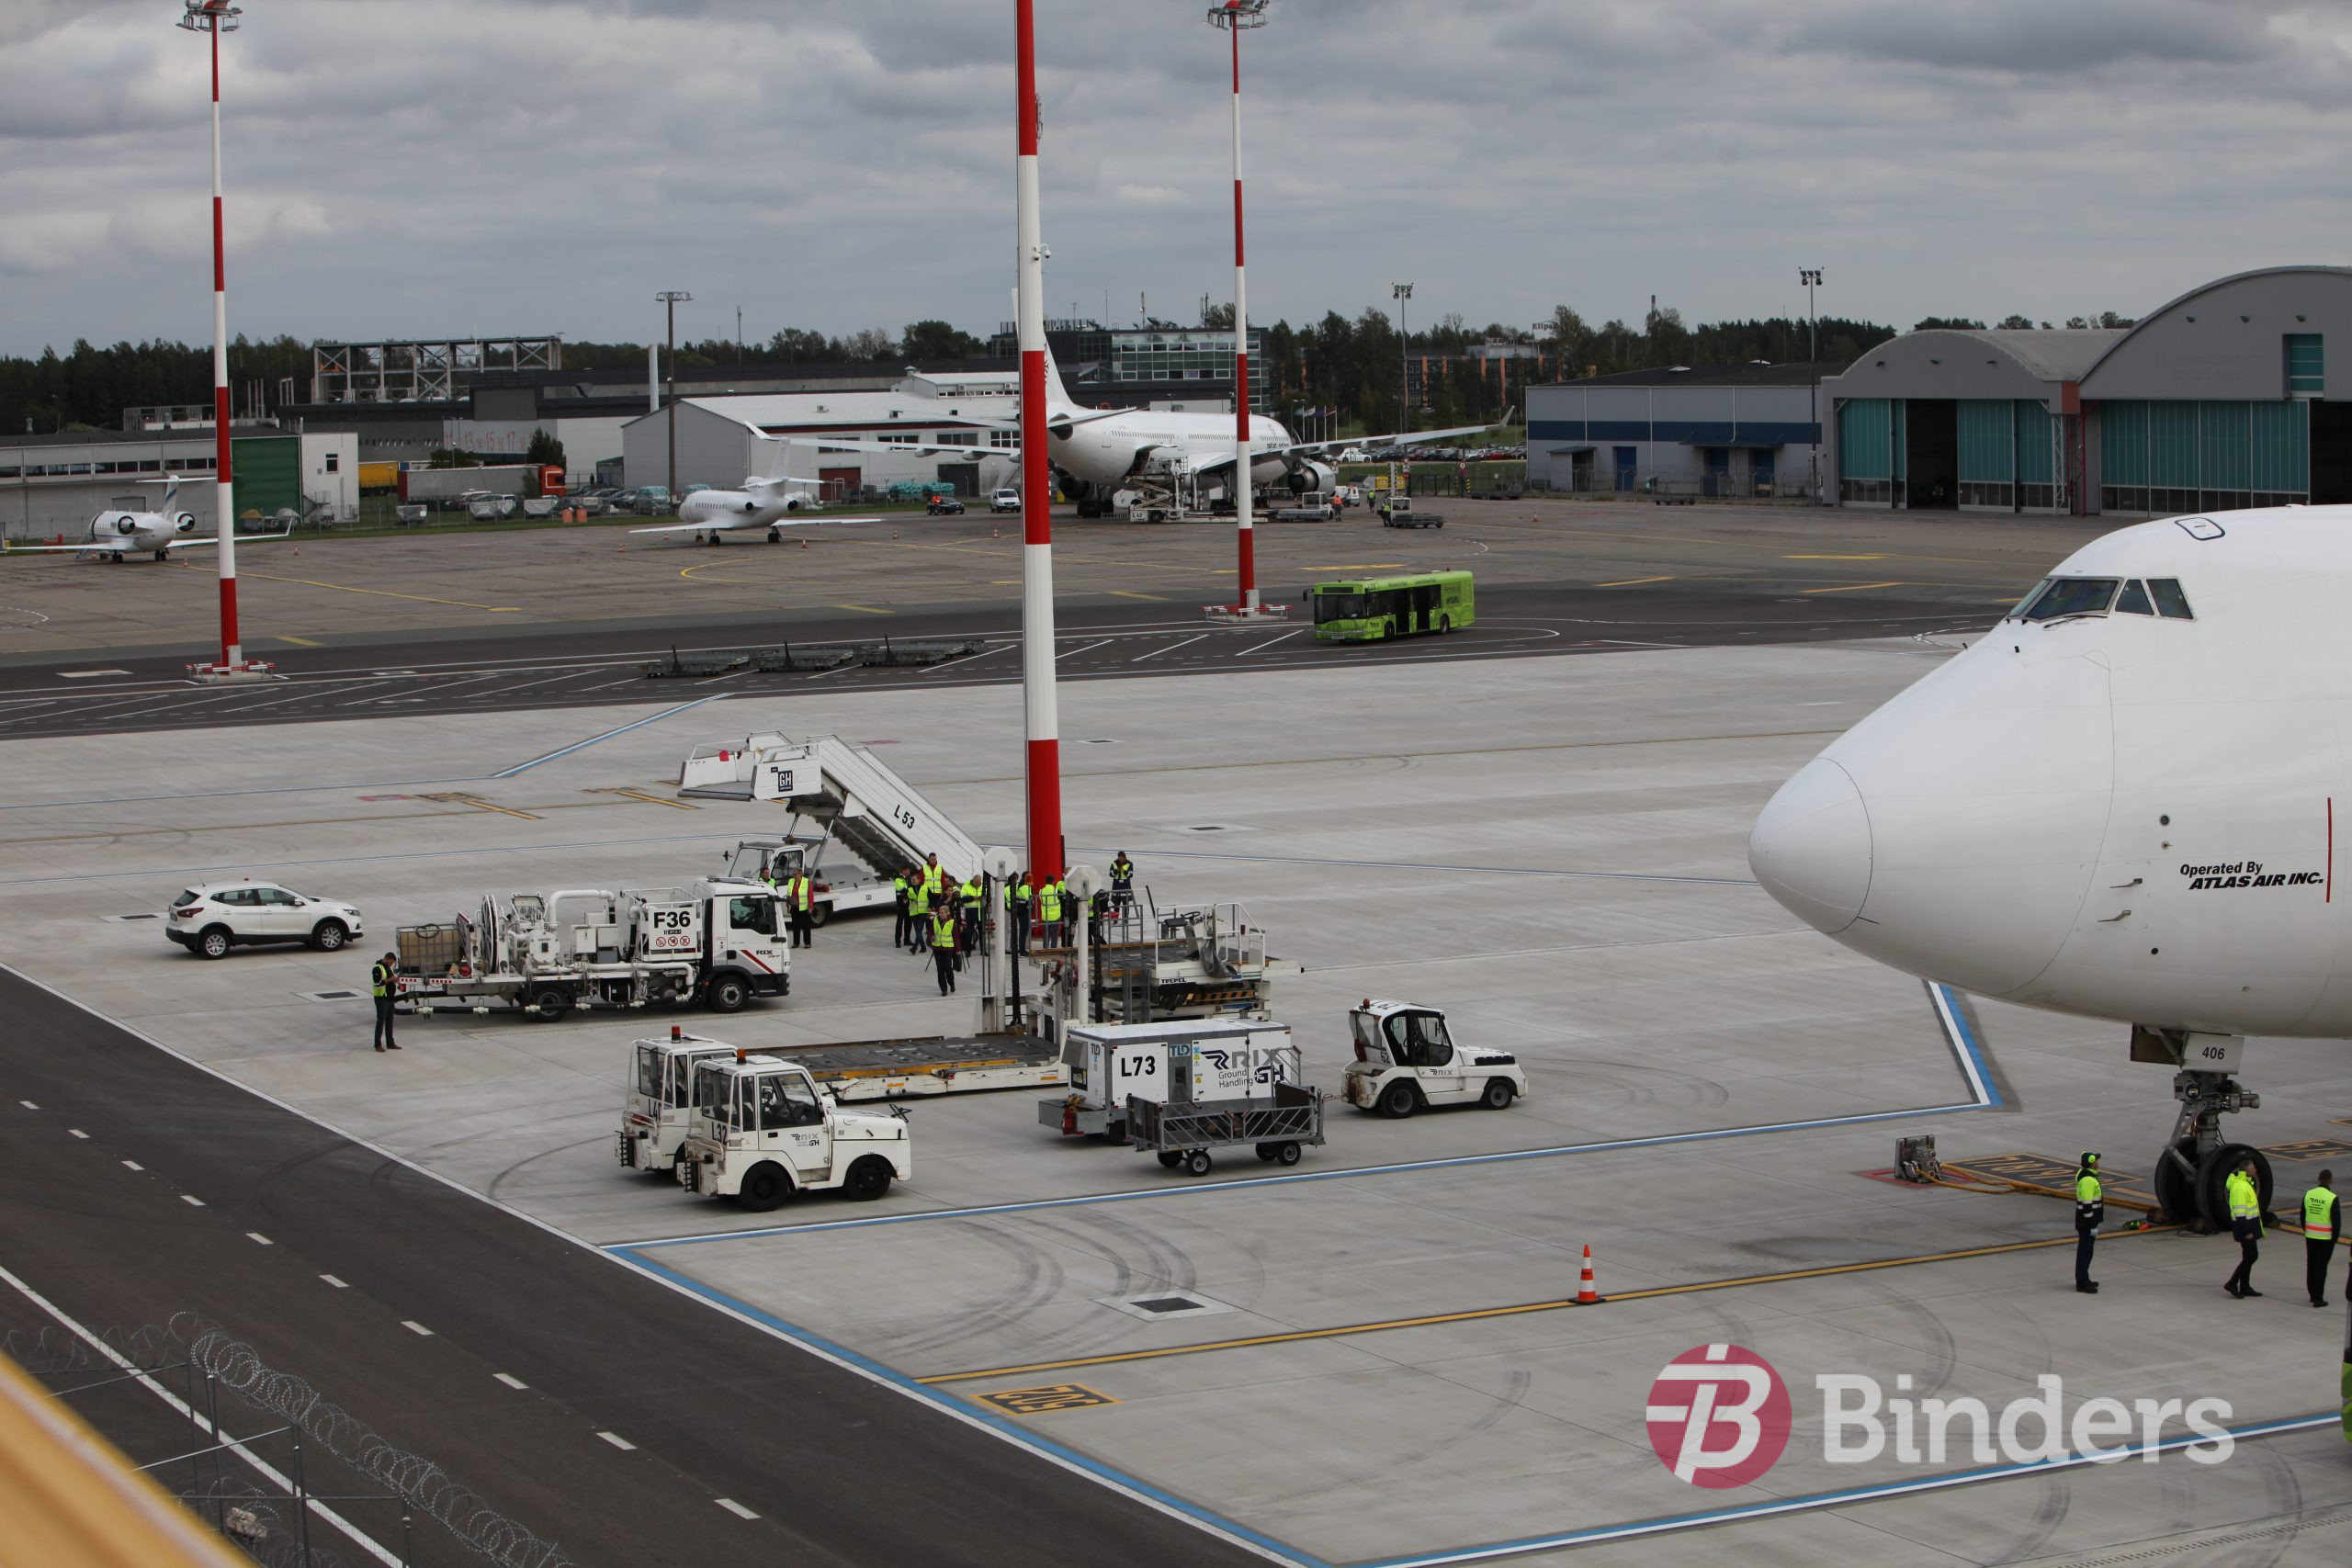 Starptautiskajā lidostā kravas lidmašīnu apkalpošanas infrastruktūra Binders.lv